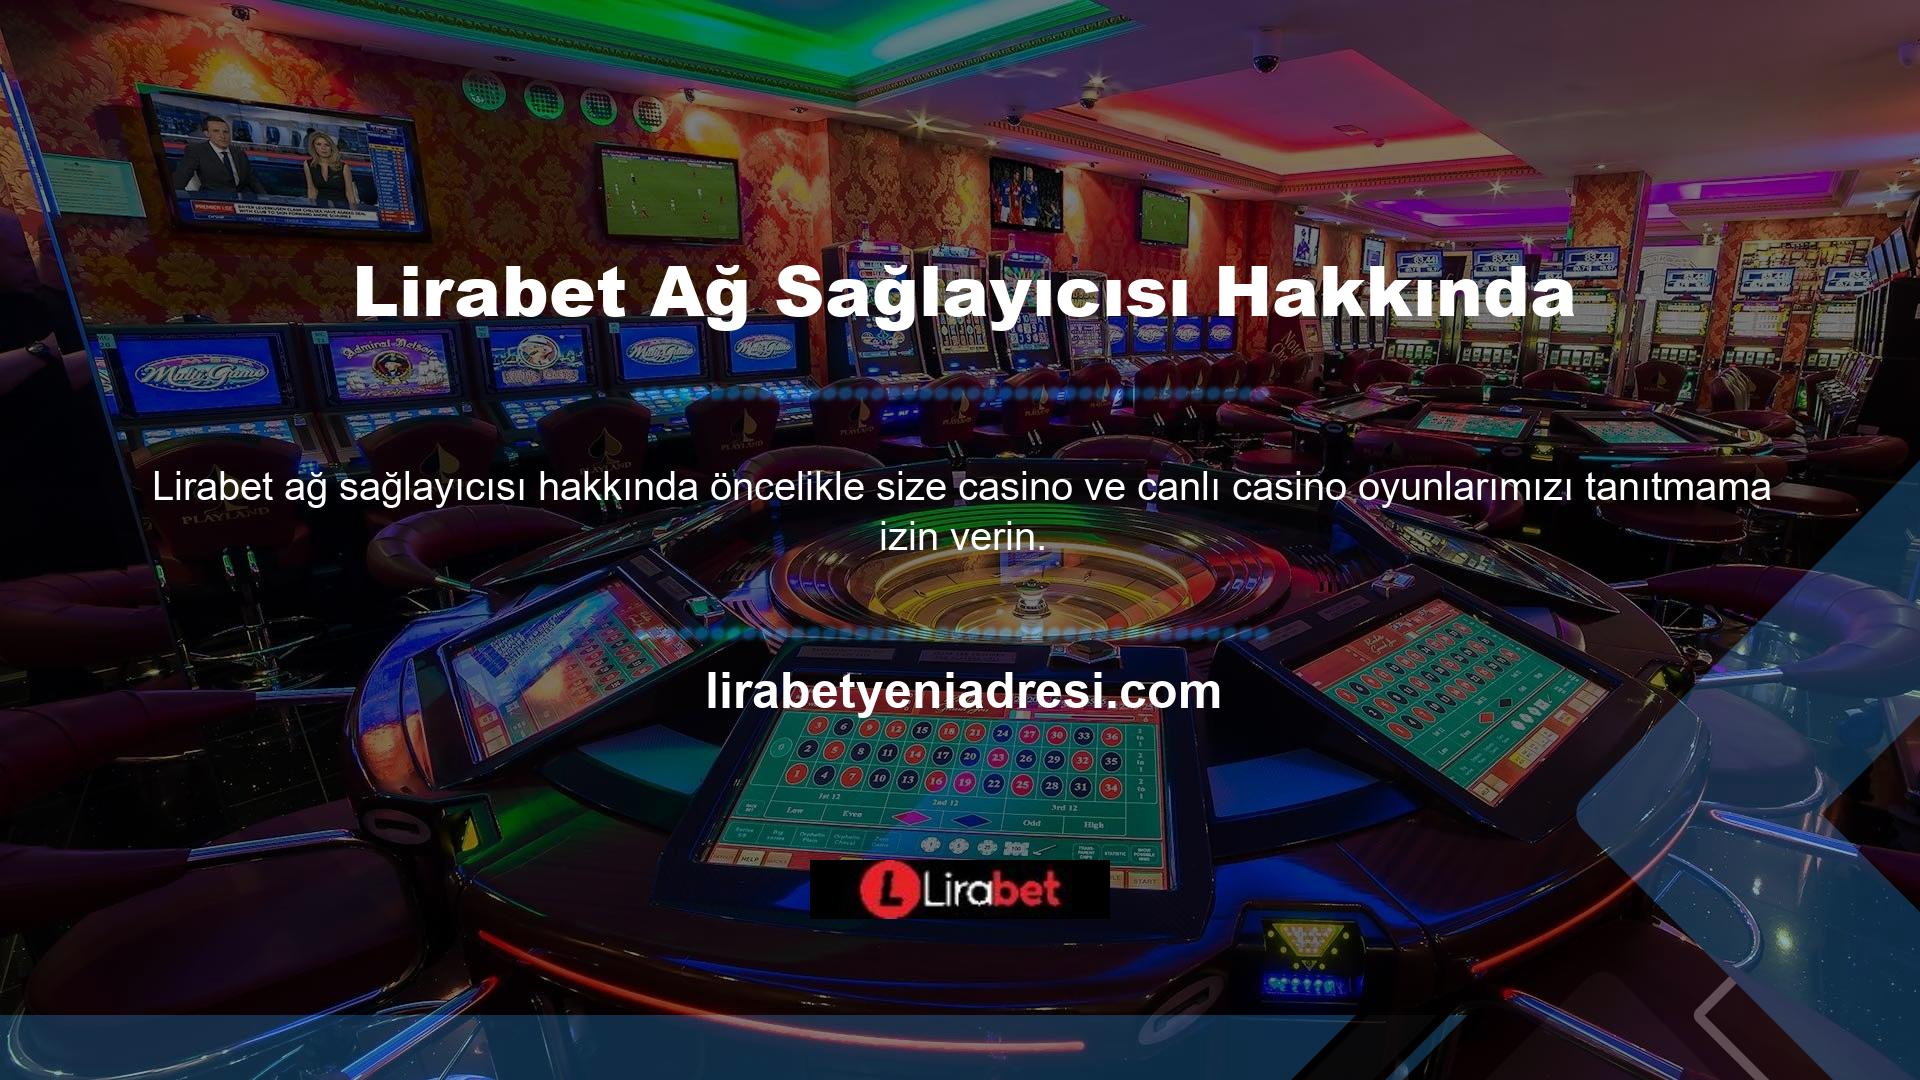 Dünyanın en saygın sağlayıcılarıyla yapılan ortaklıklar sayesinde Lirabet, üyeleri arasında en popüler web sitesi haline geldi